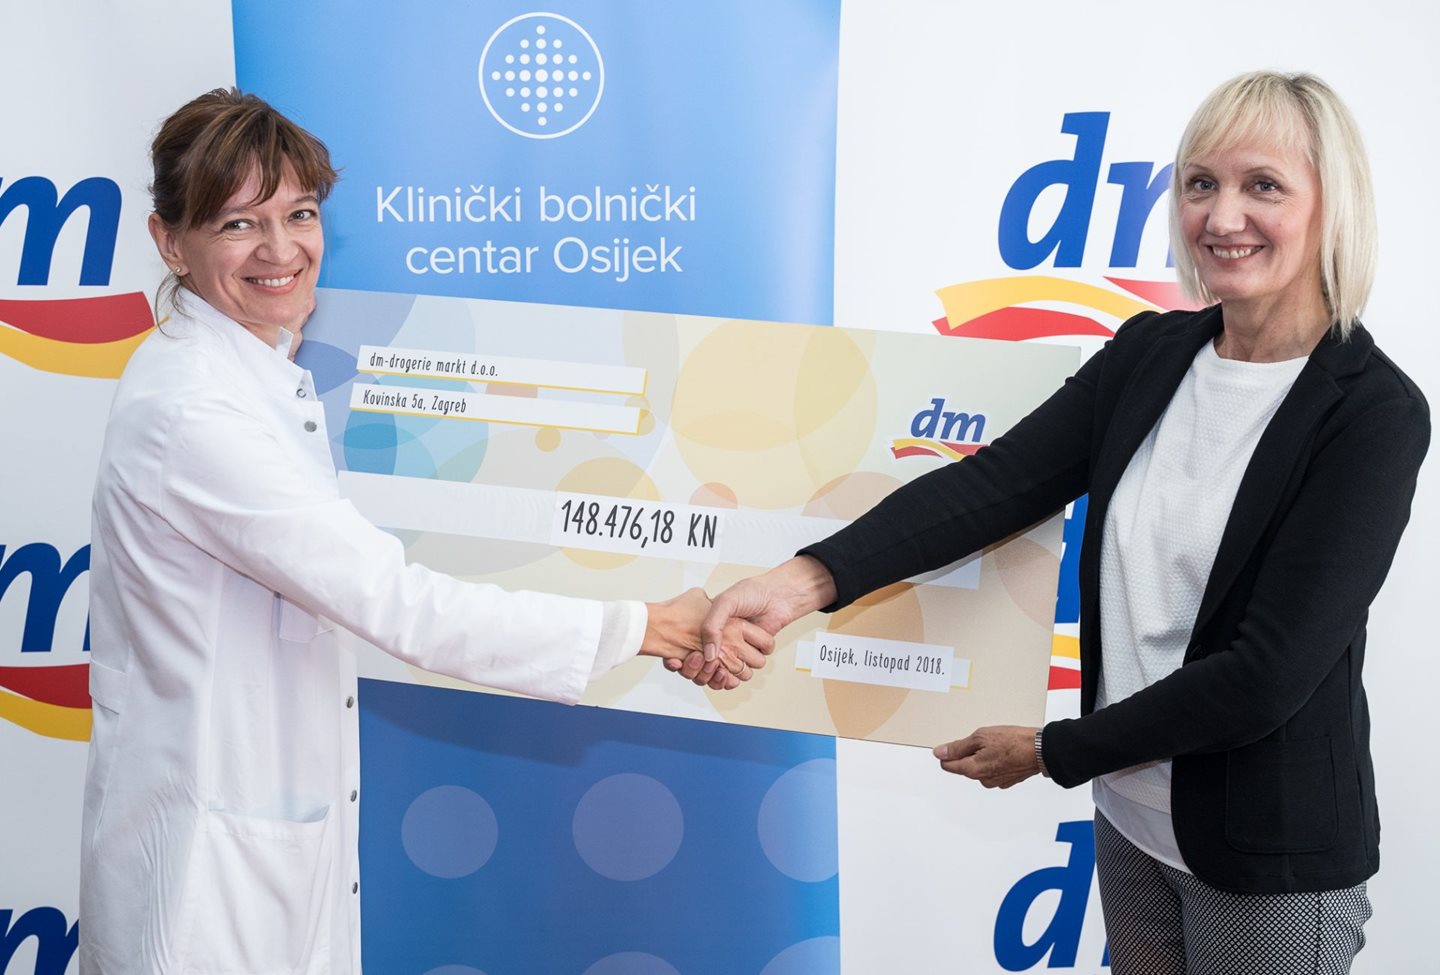 dm-ova donacija KBC-u Osijek poboljšat će uvjete rada i podići kvalitetu skrbi za pacijente